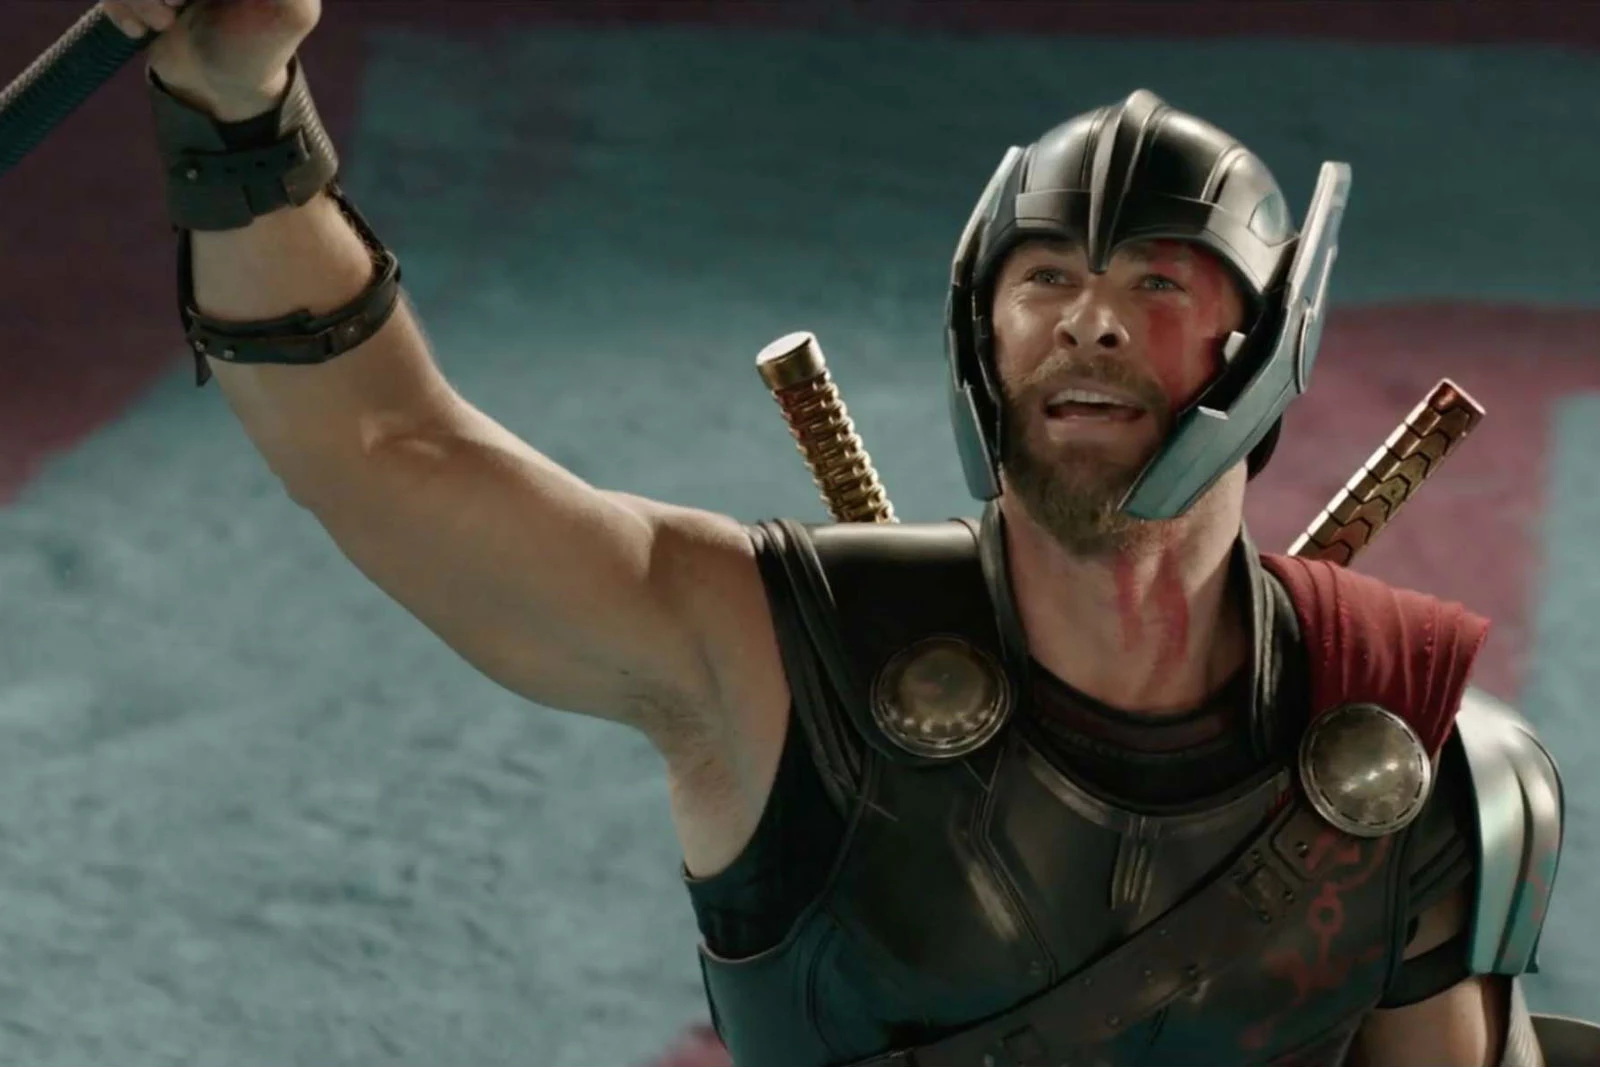 Thor and Hulk Meet Again in New 'Thor: Ragnarok' Clip